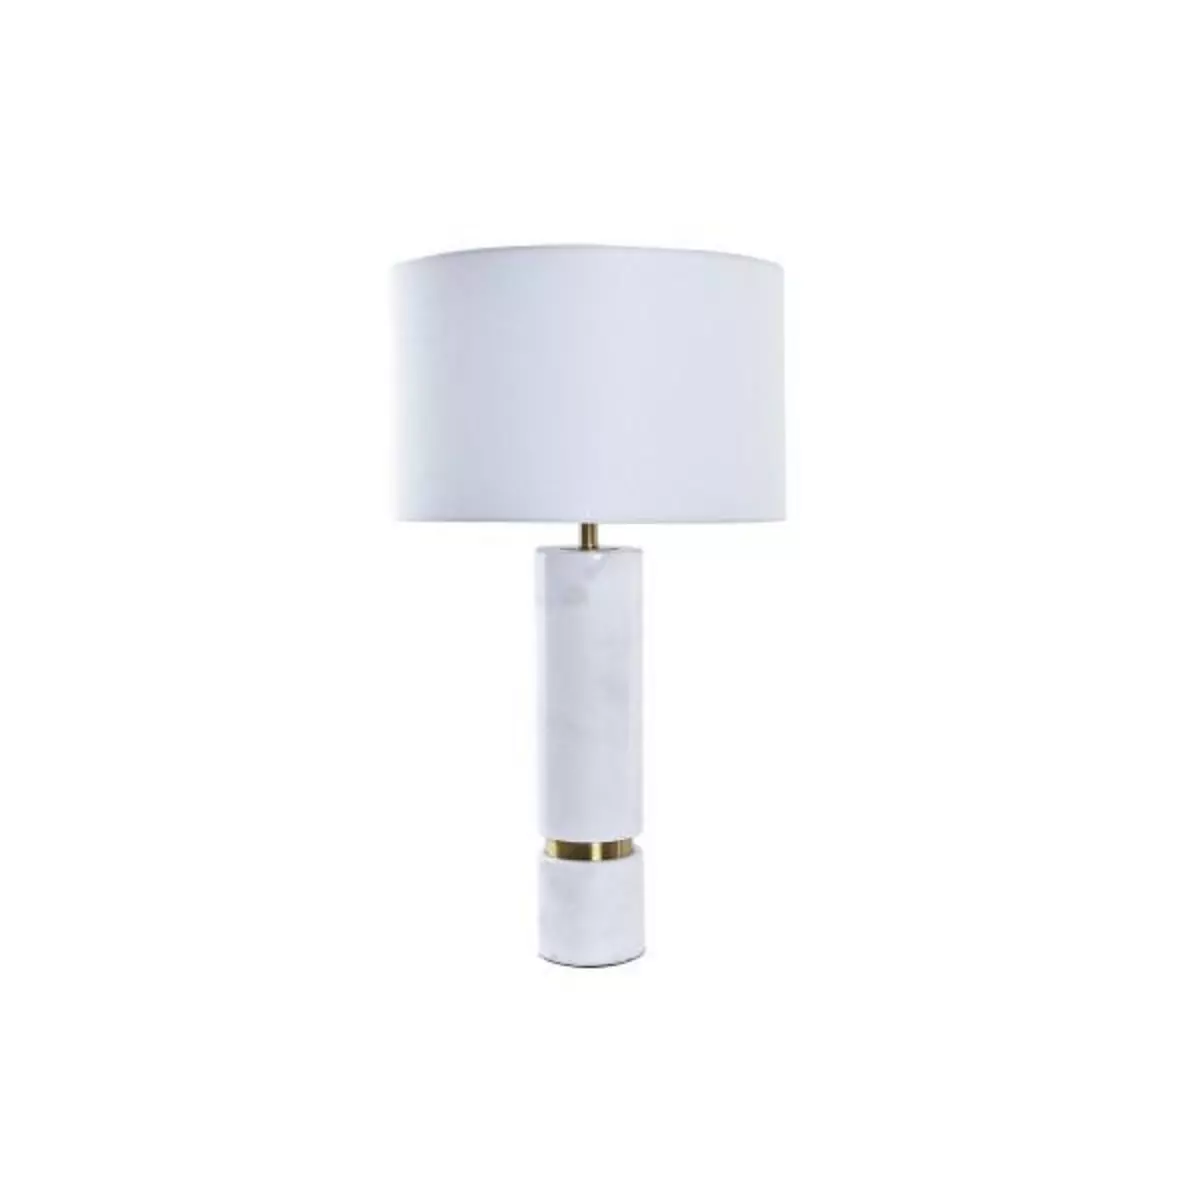 MARKET24 Lampe de bureau DKD Home Decor Doré Blanc 220 V 50 W Moderne (41 x 41 x 76 cm)